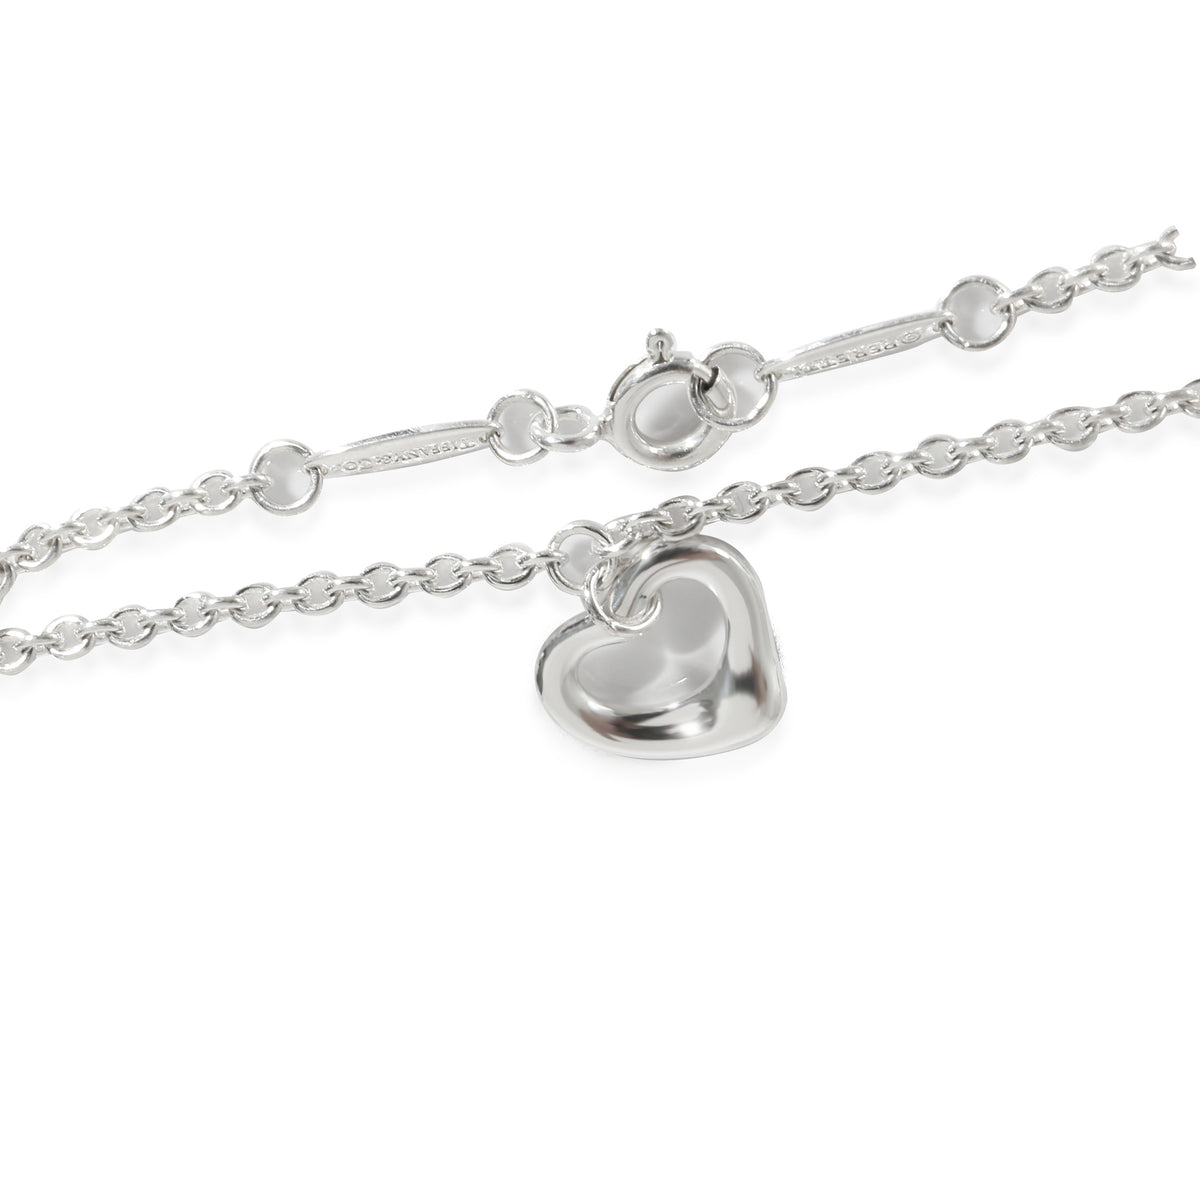 Elsa Peretti Open Heart Charm Bracelet in  Sterling Silver